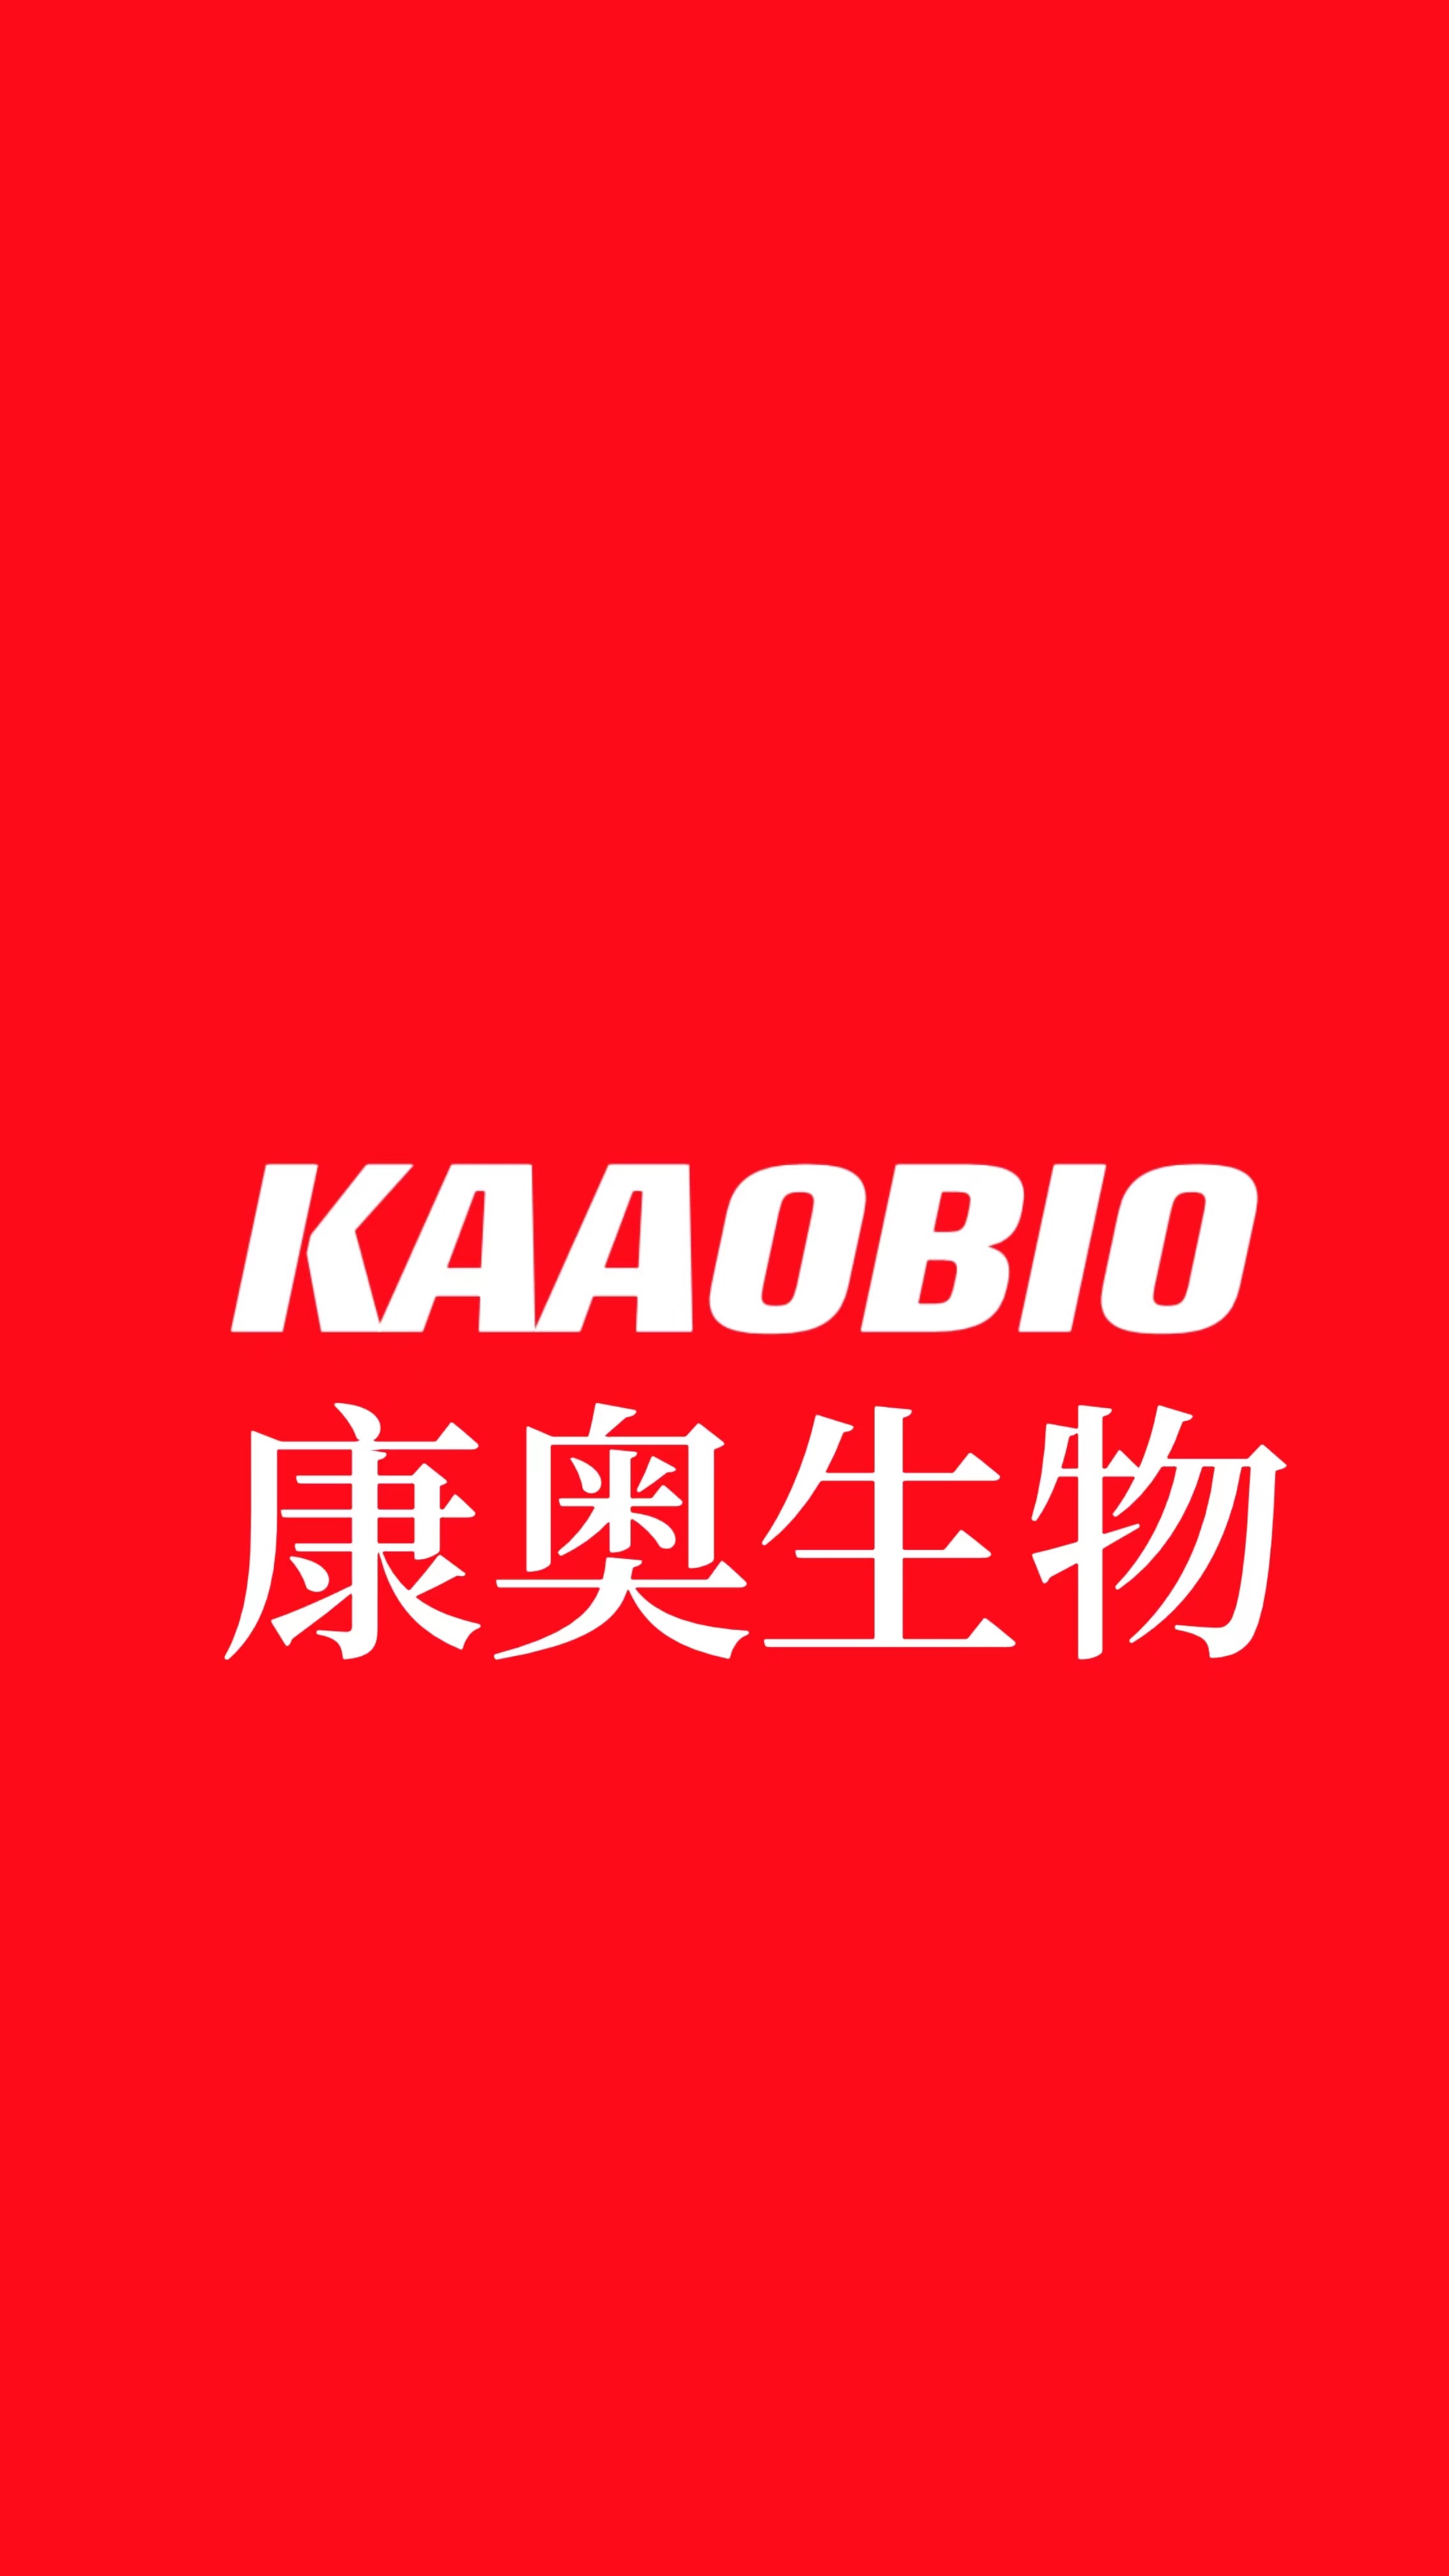 KAAOBIO康奥 PCR封板膜 高透明压敏膜 盒装